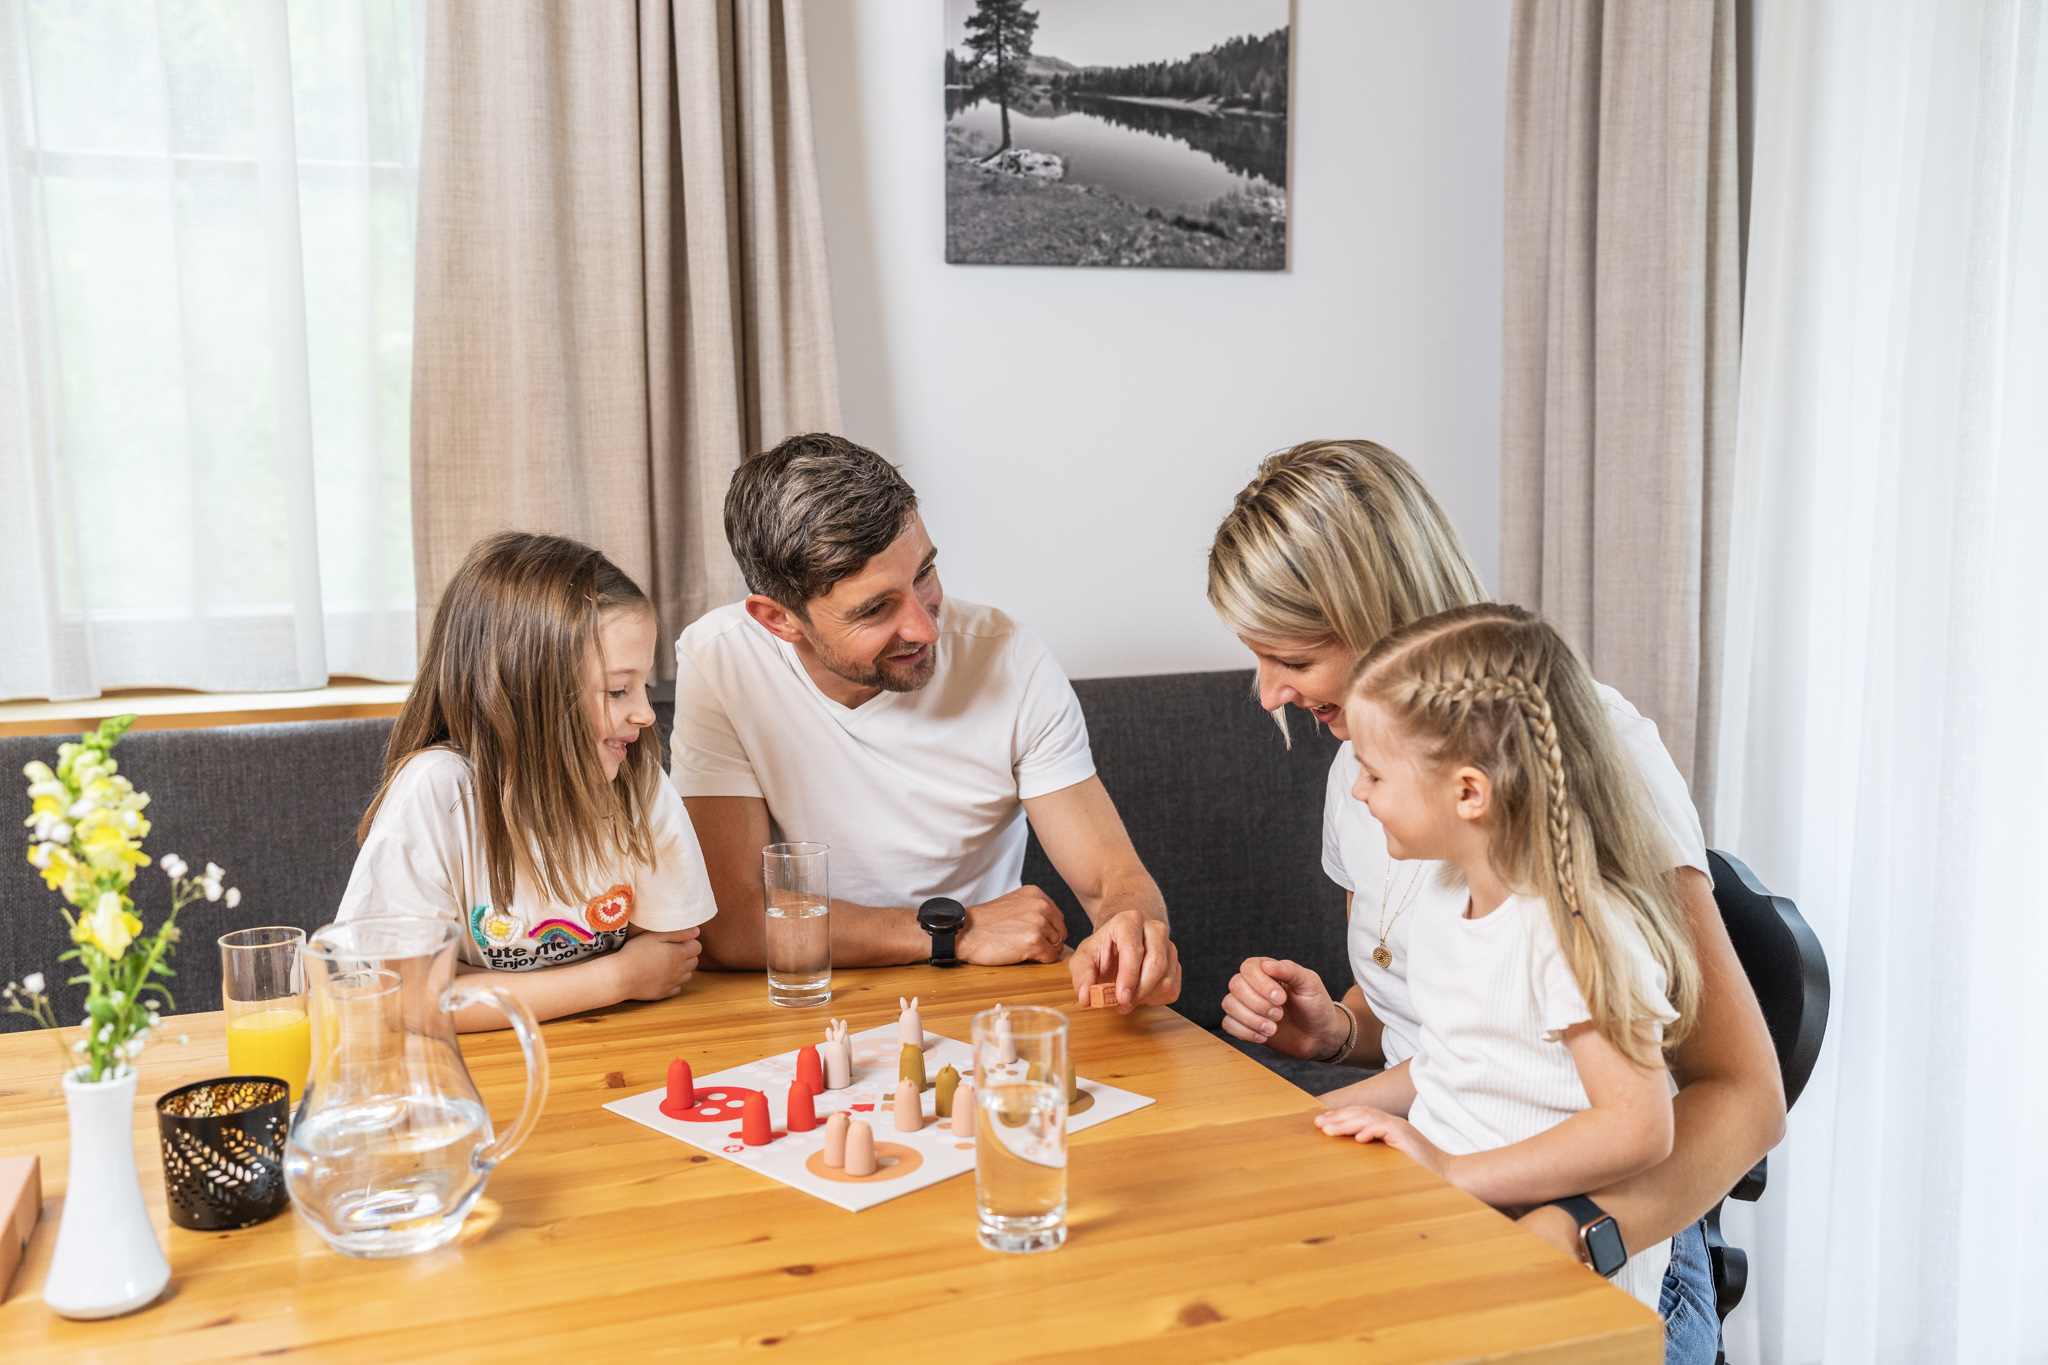 Una famiglia di quattro persone che gioca a un gioco da tavolo.